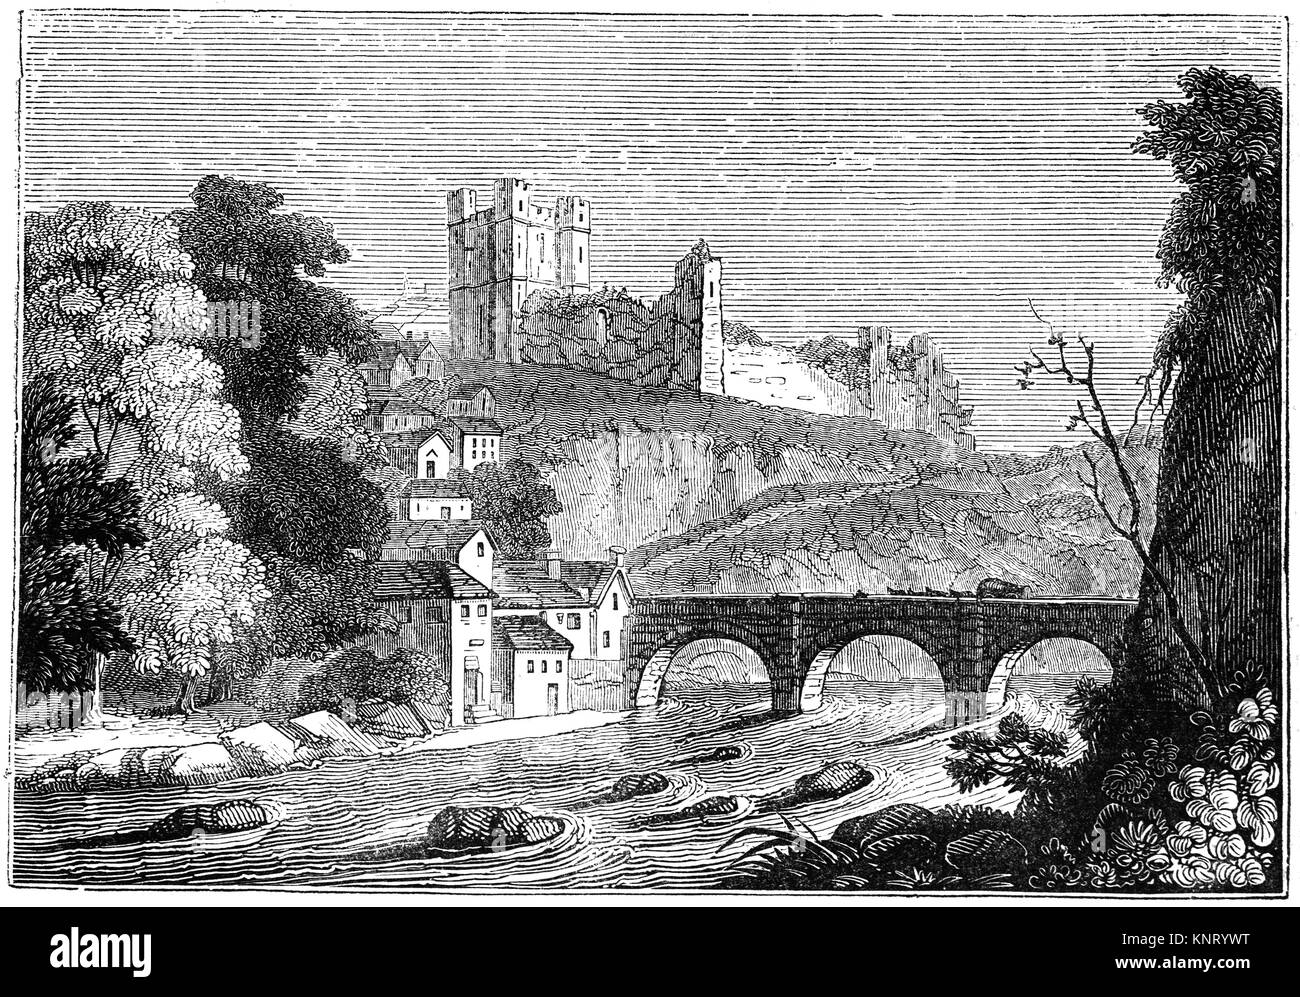 Une vue de la Richmond Bridge avec bennage et bât traversant la rivière Swale ci-dessous le marché de Richmond, et dominé par le Château de Richmond, achevée en 1086. North Yorkshire, Angleterre. Banque D'Images